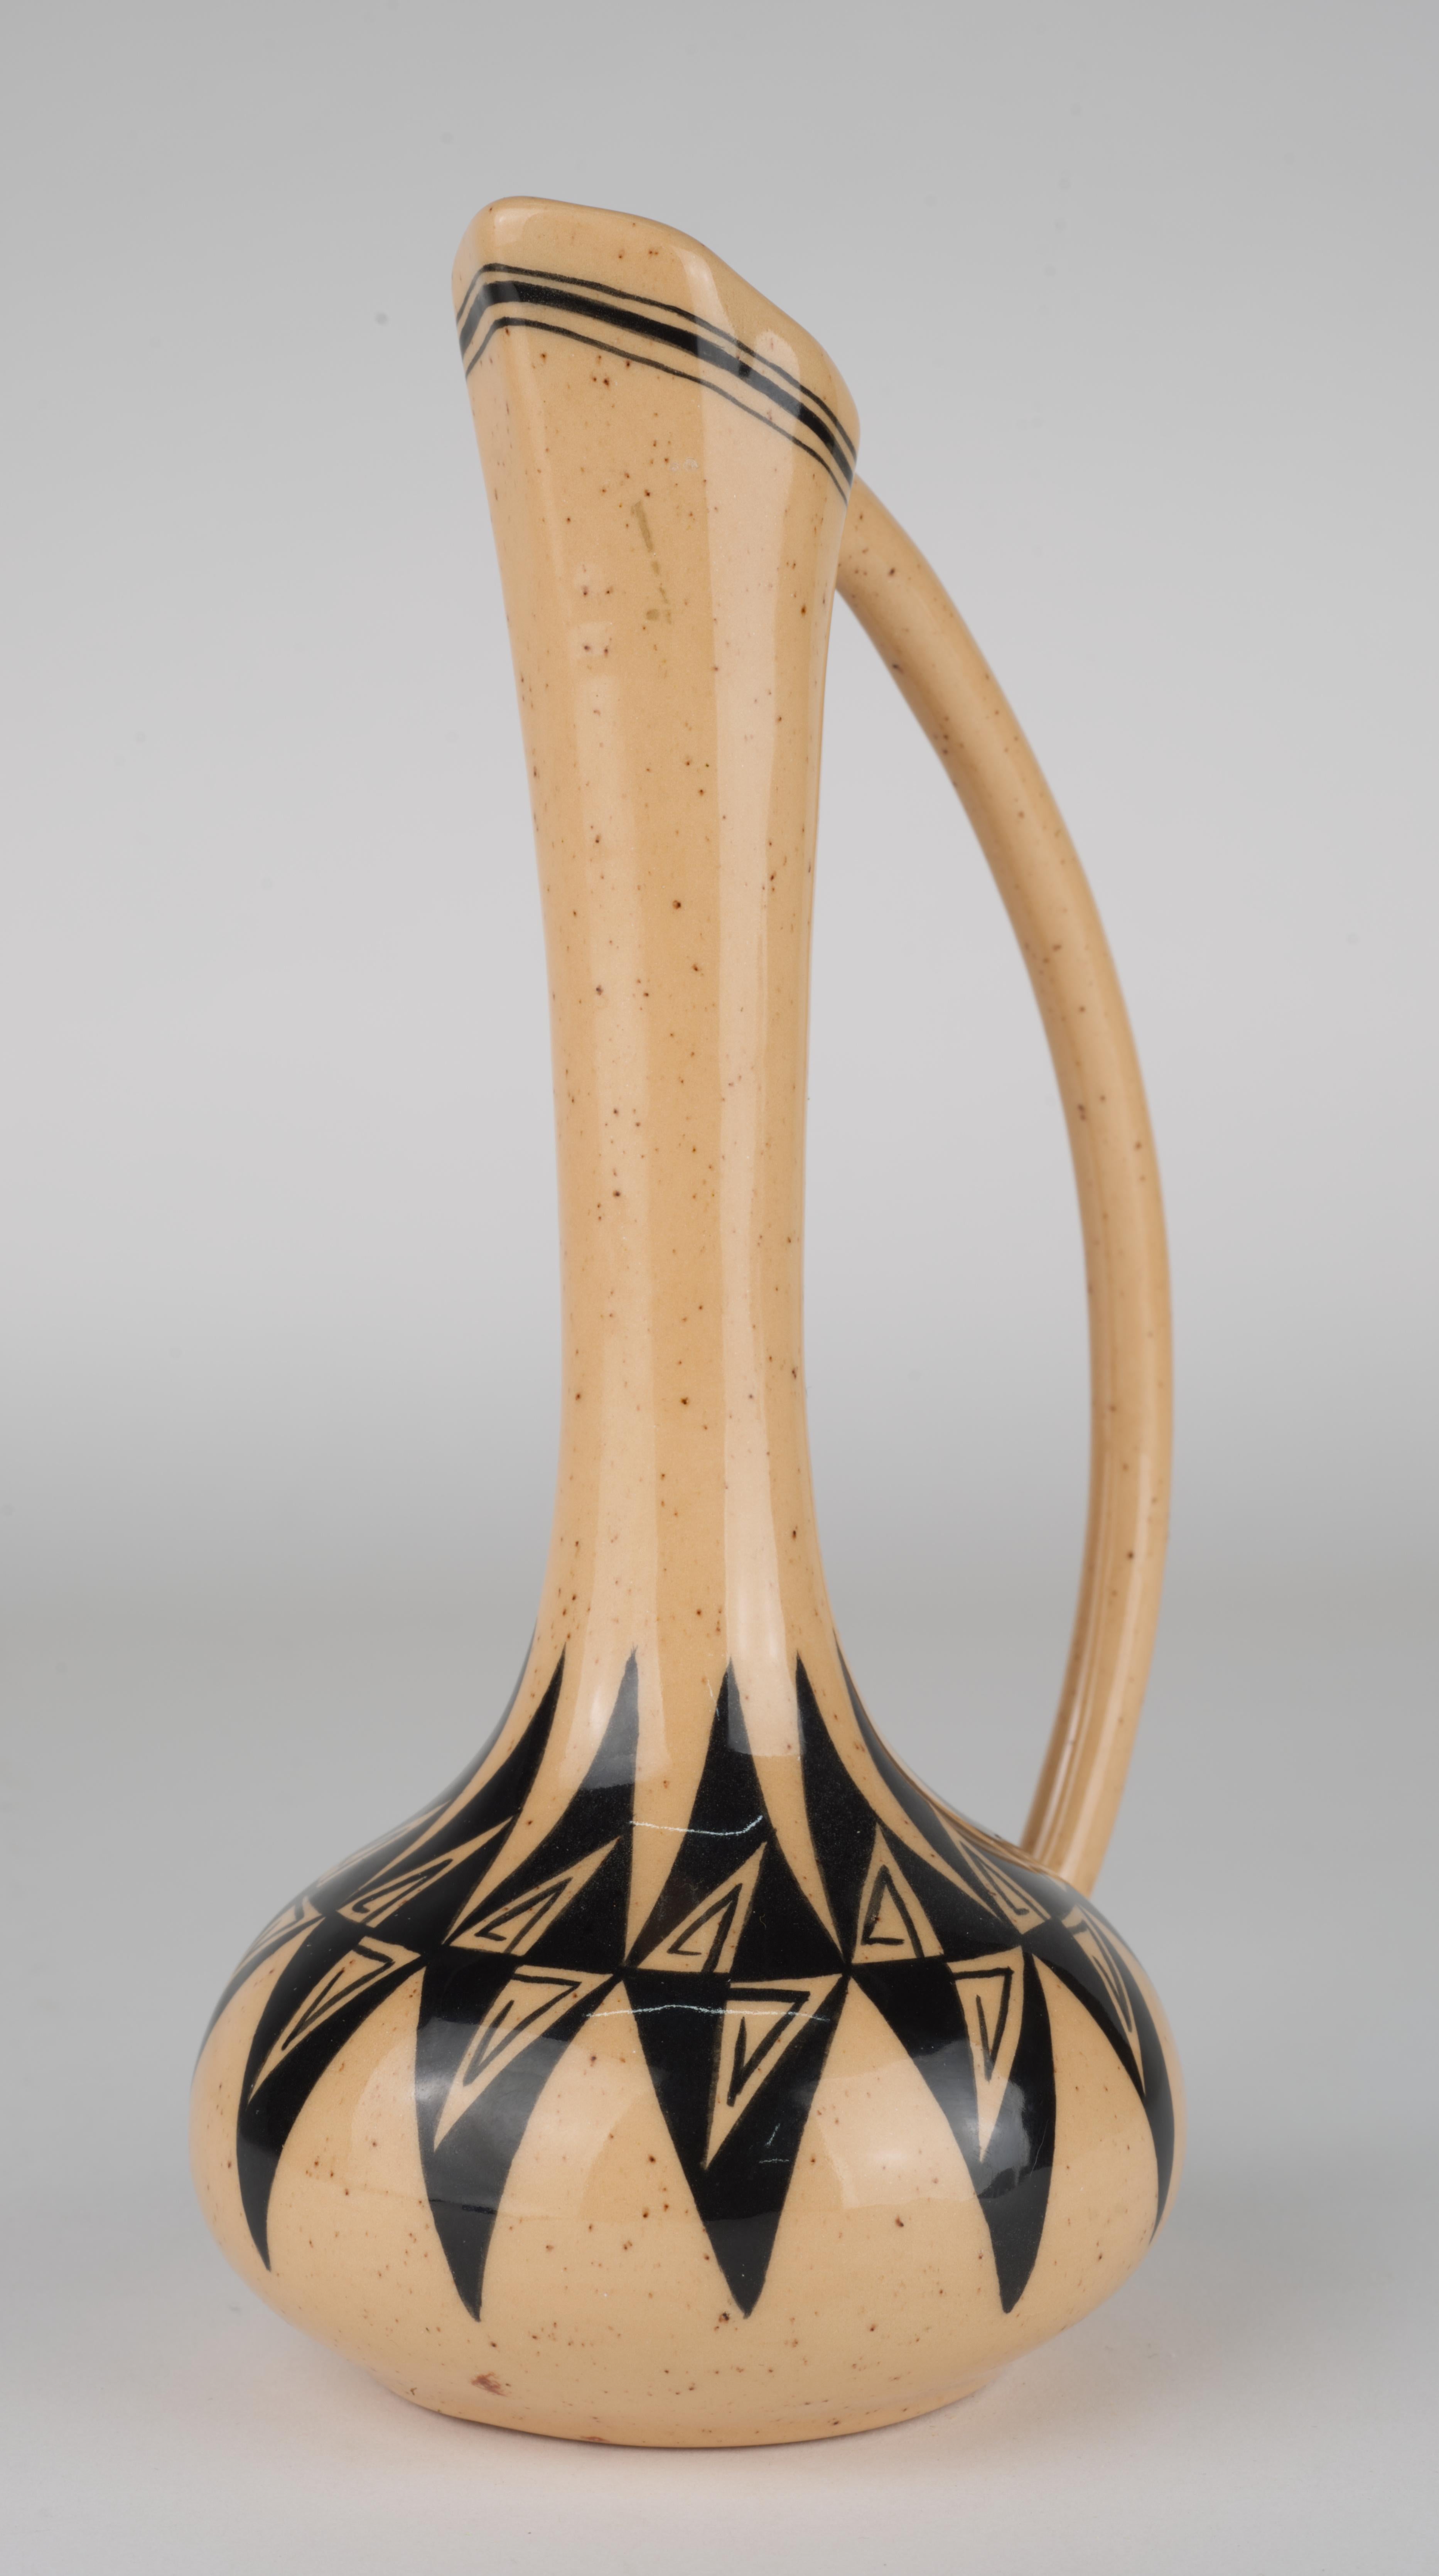  Ce gracieux vase en forme d'aiguière est tourné et décoré à la main d'un motif abstrait traditionnel en noir sur fond de glaçure rose corail tachetée. L'emplacement du motif est proportionné de manière sensible à la forme du vase, créant un effet